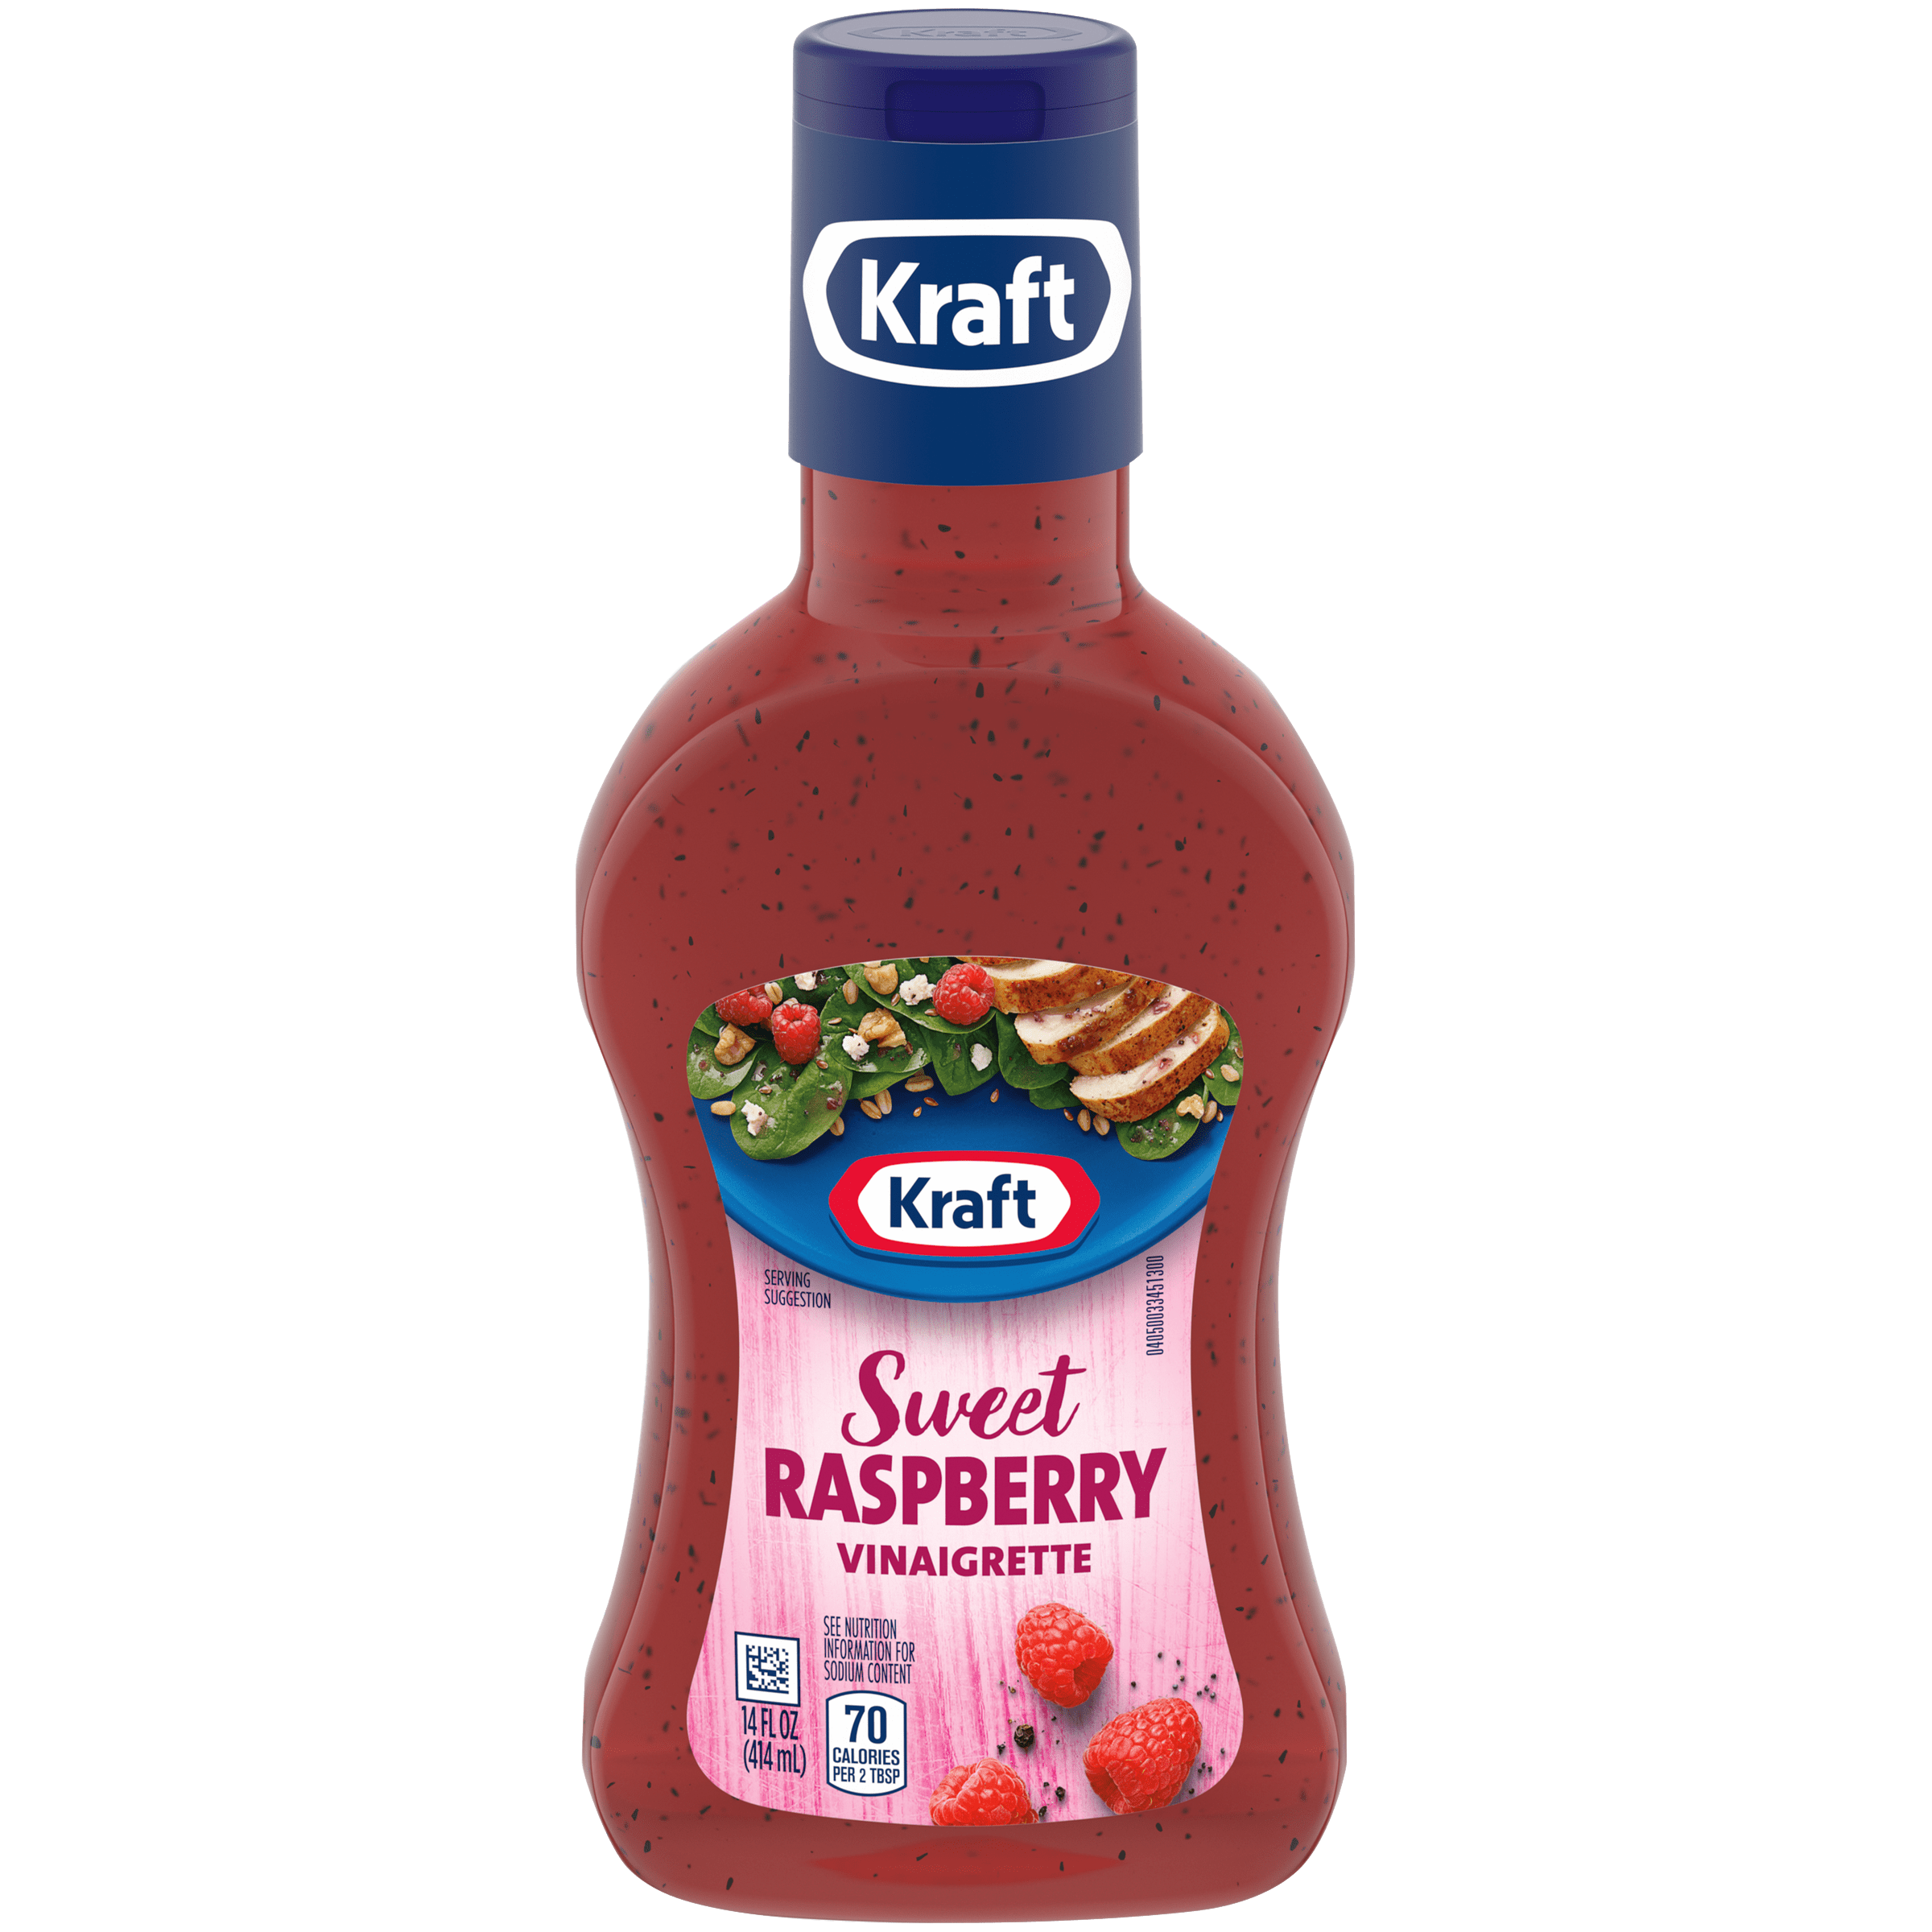 Sweet Raspberry Vinaigrette Salad Dressing